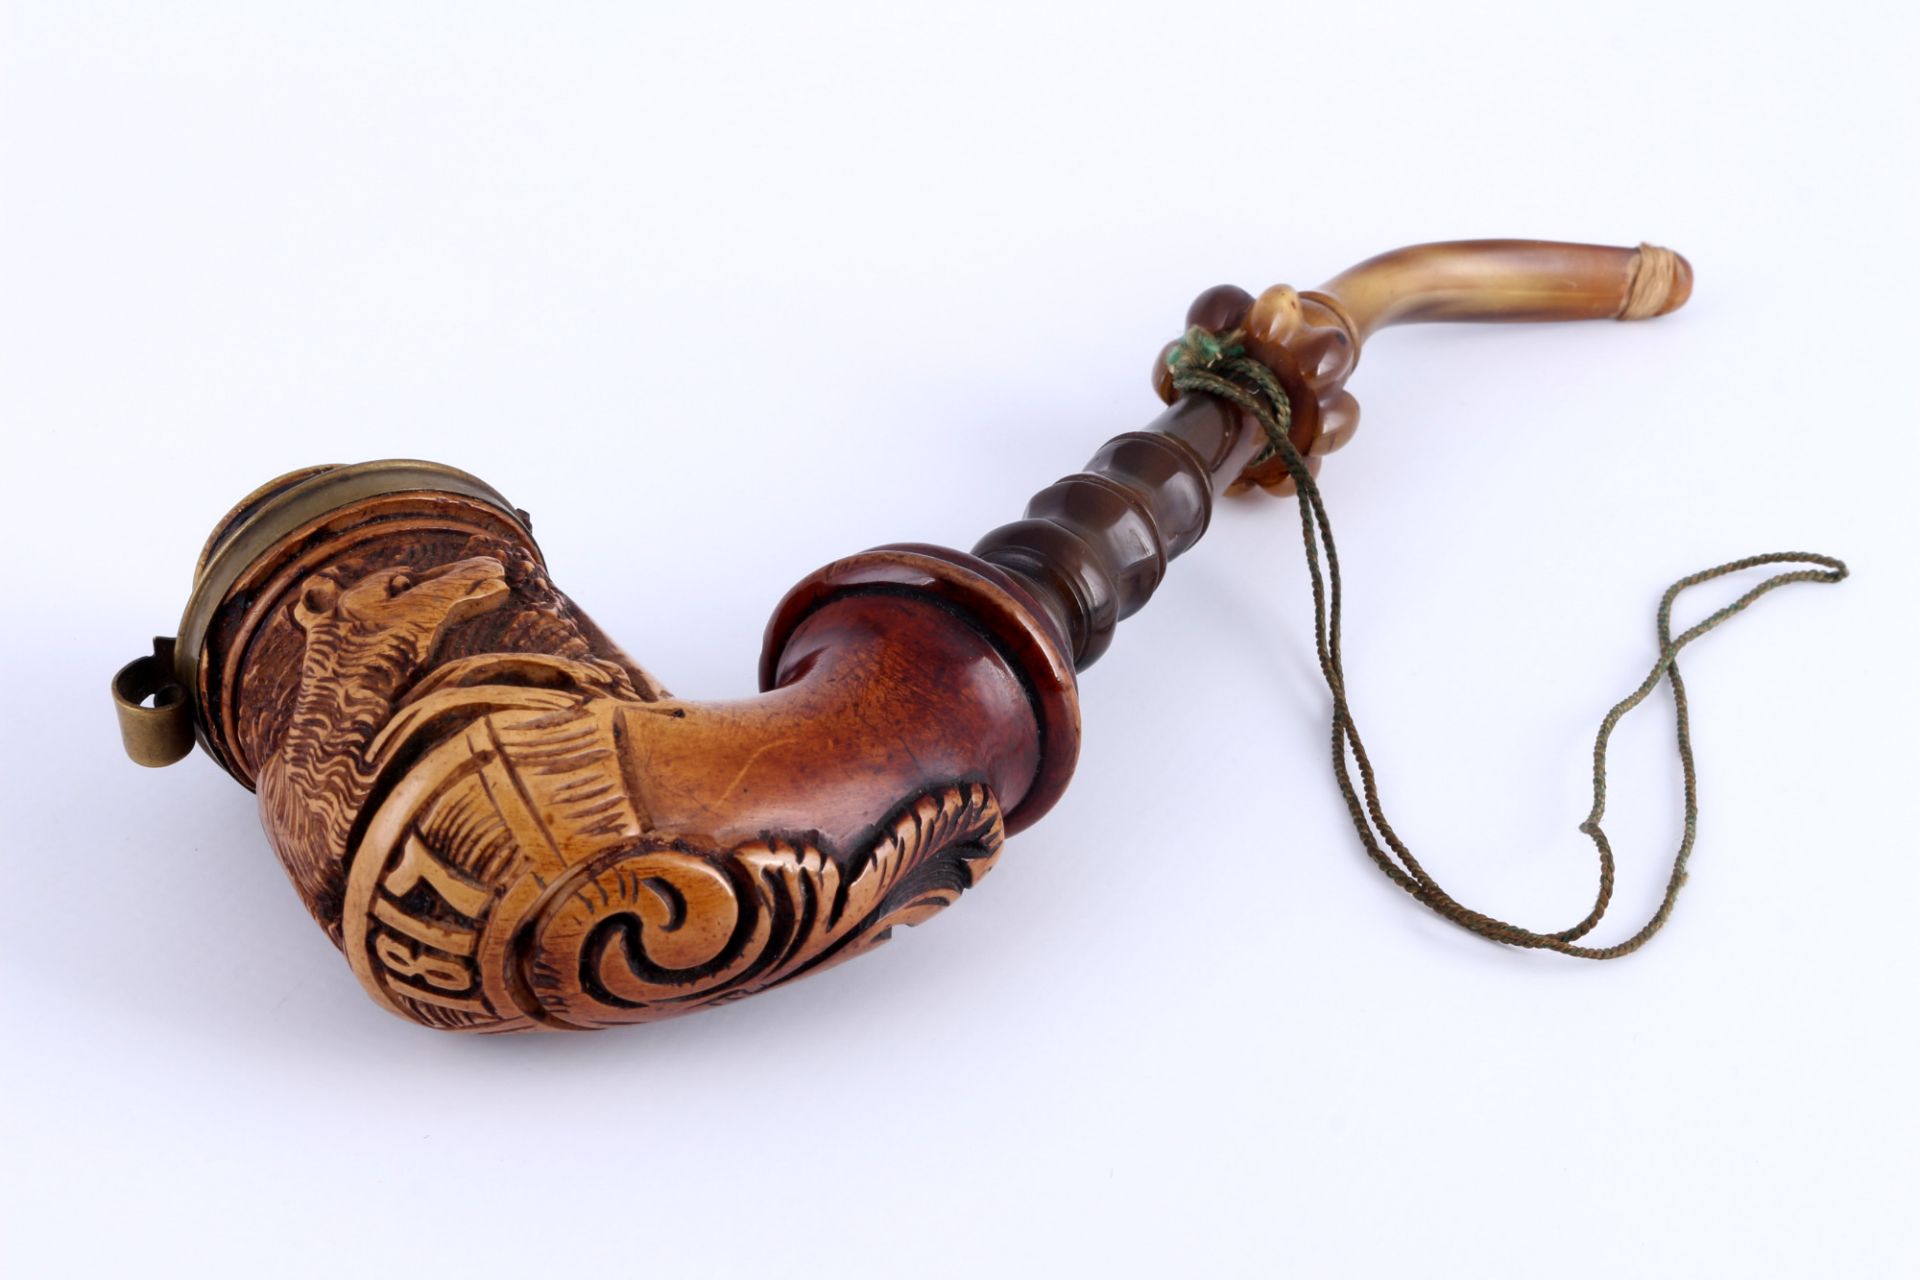 Meerschaum tabacco pipe 19th century, Meerschaum Tabakpfeife 19. Jahrhundert, - Image 3 of 5